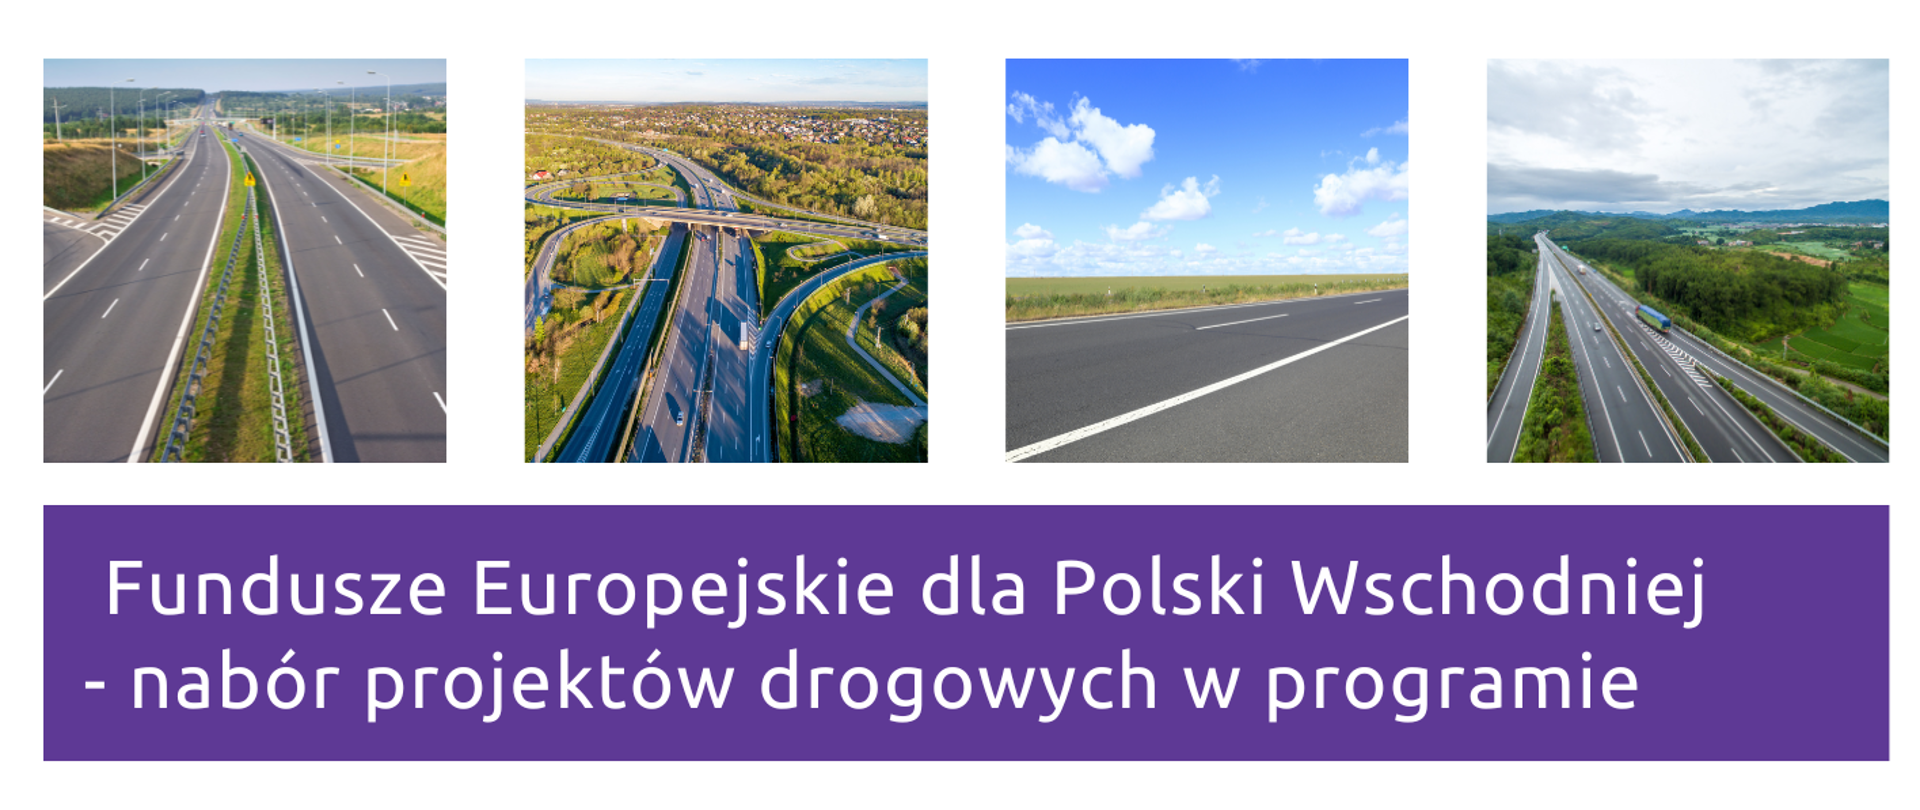 Rusza nabór projektów drogowych w programie Fundusze Europejskie dla Polski Wschodniej